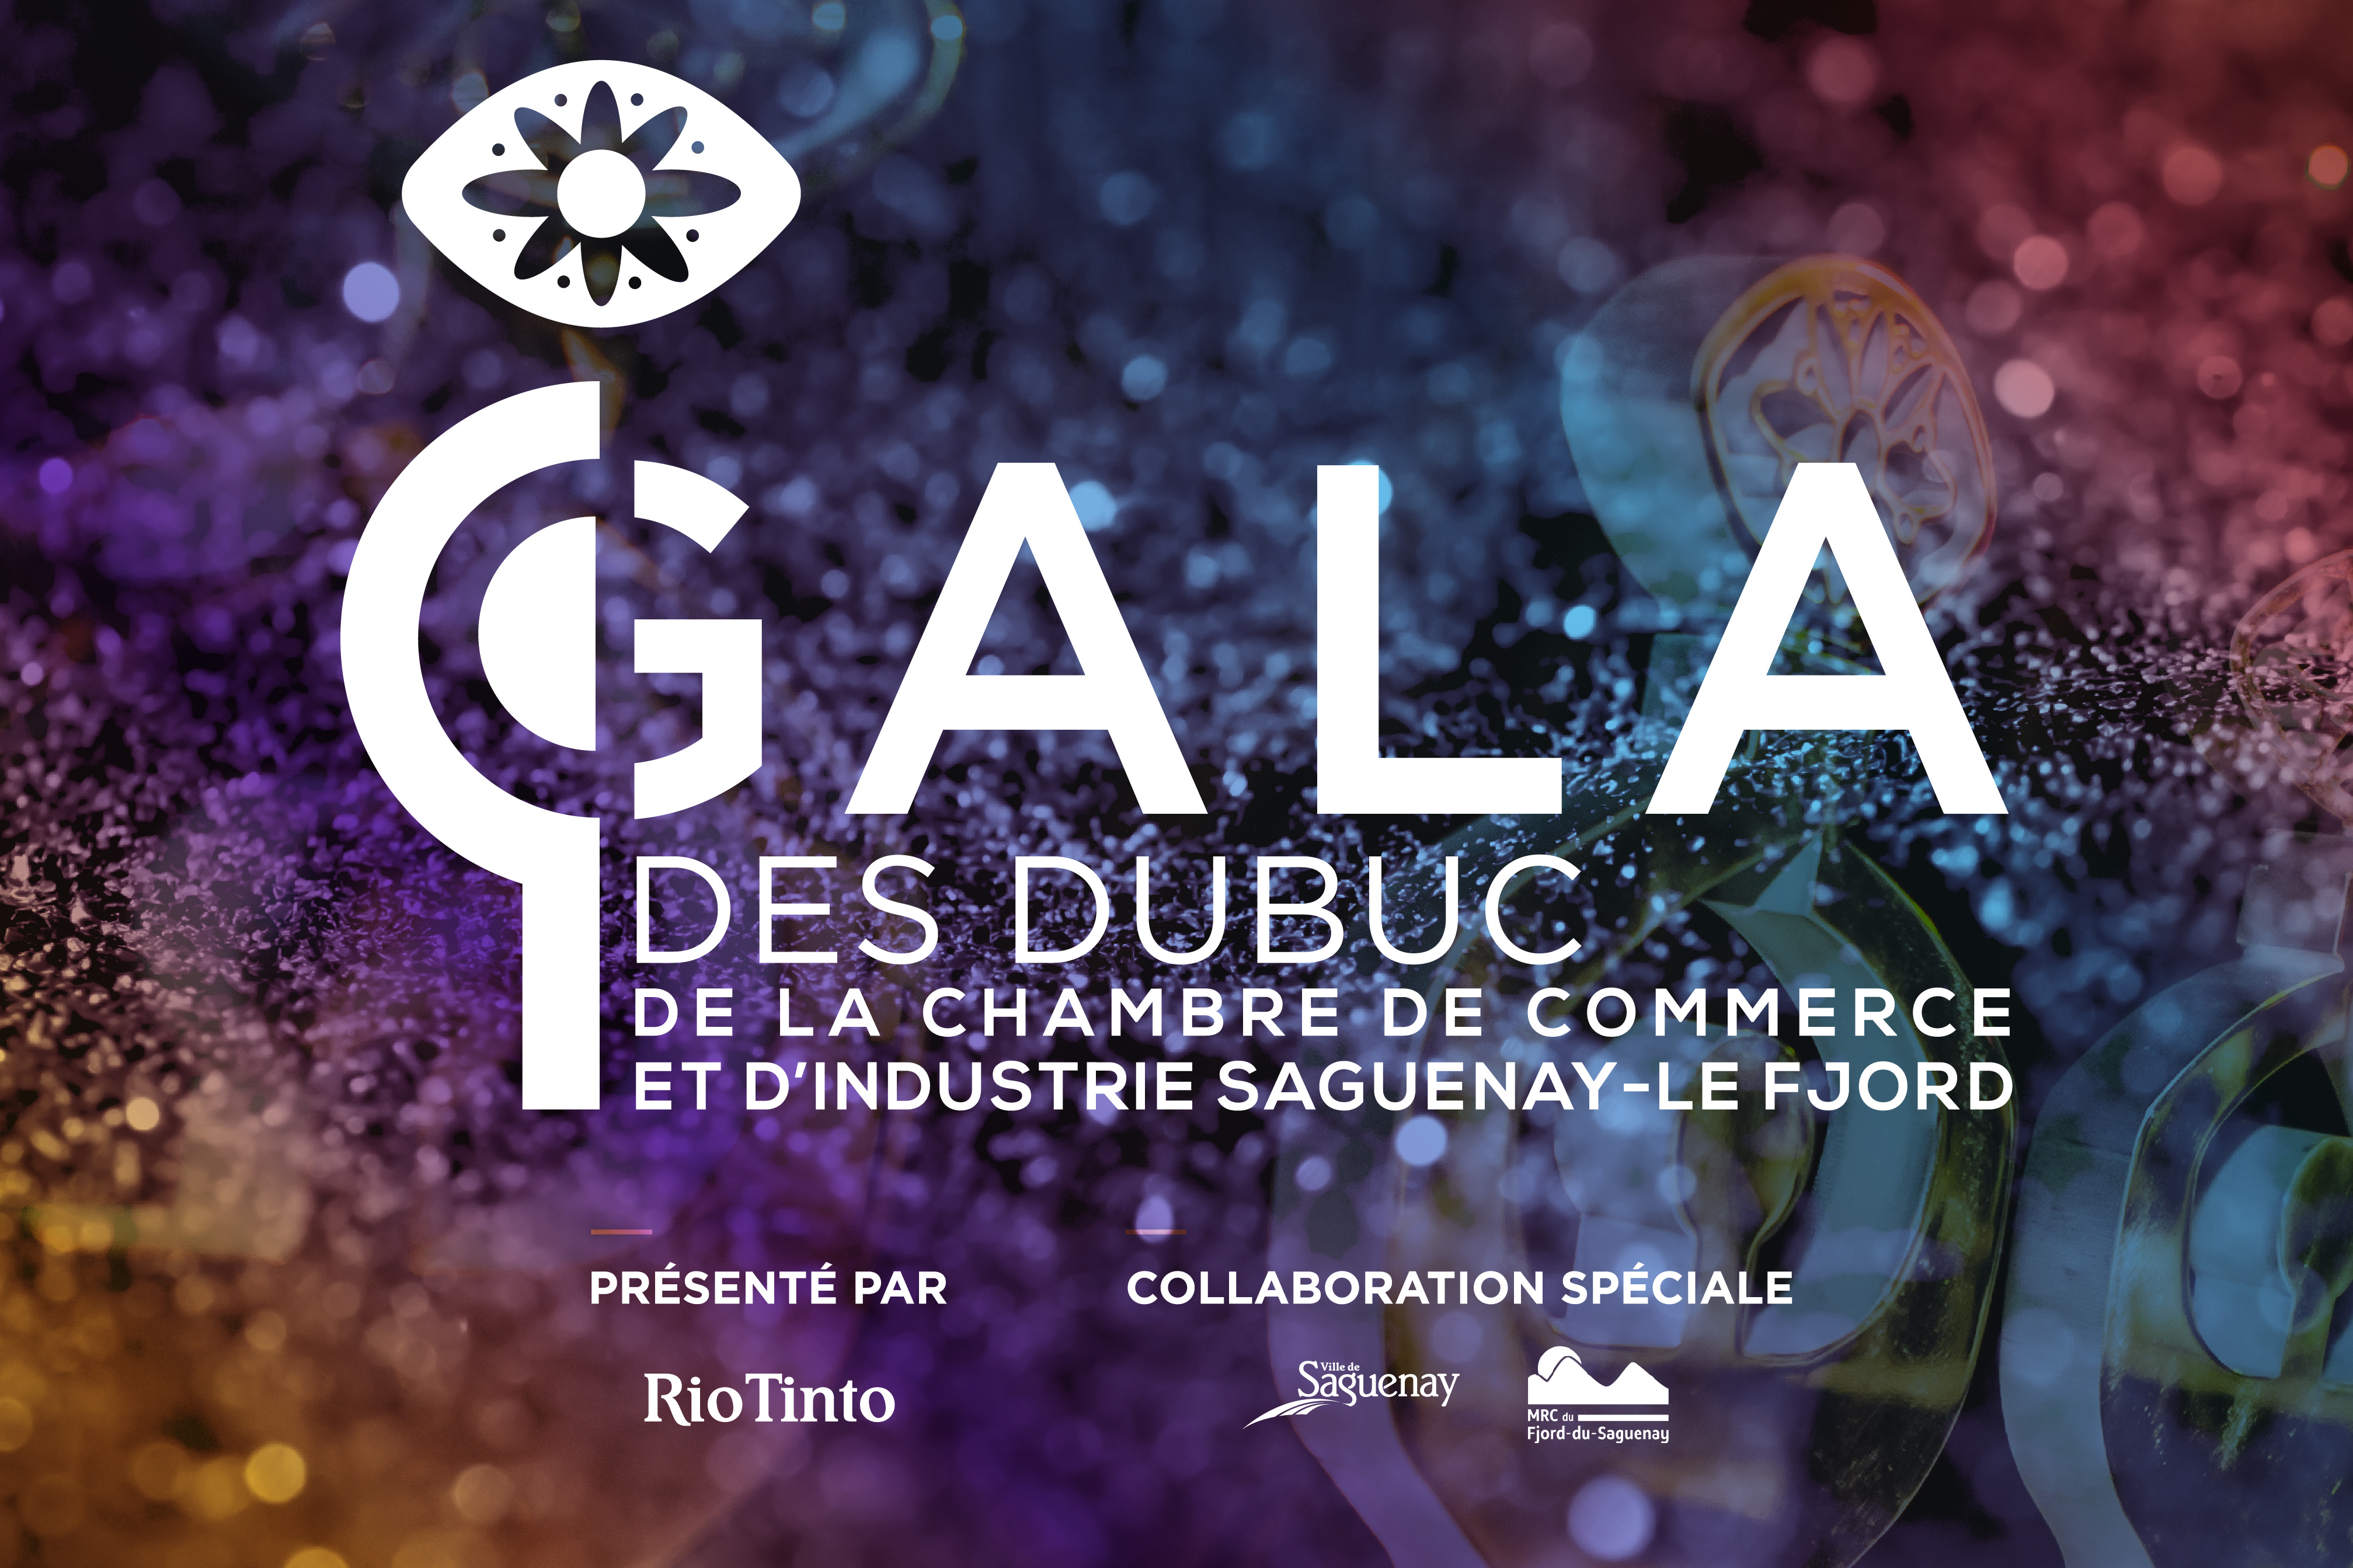 Gala des dubuc 2025 - Chambre de commerce et d'industrie Saguenay-Le Fjord